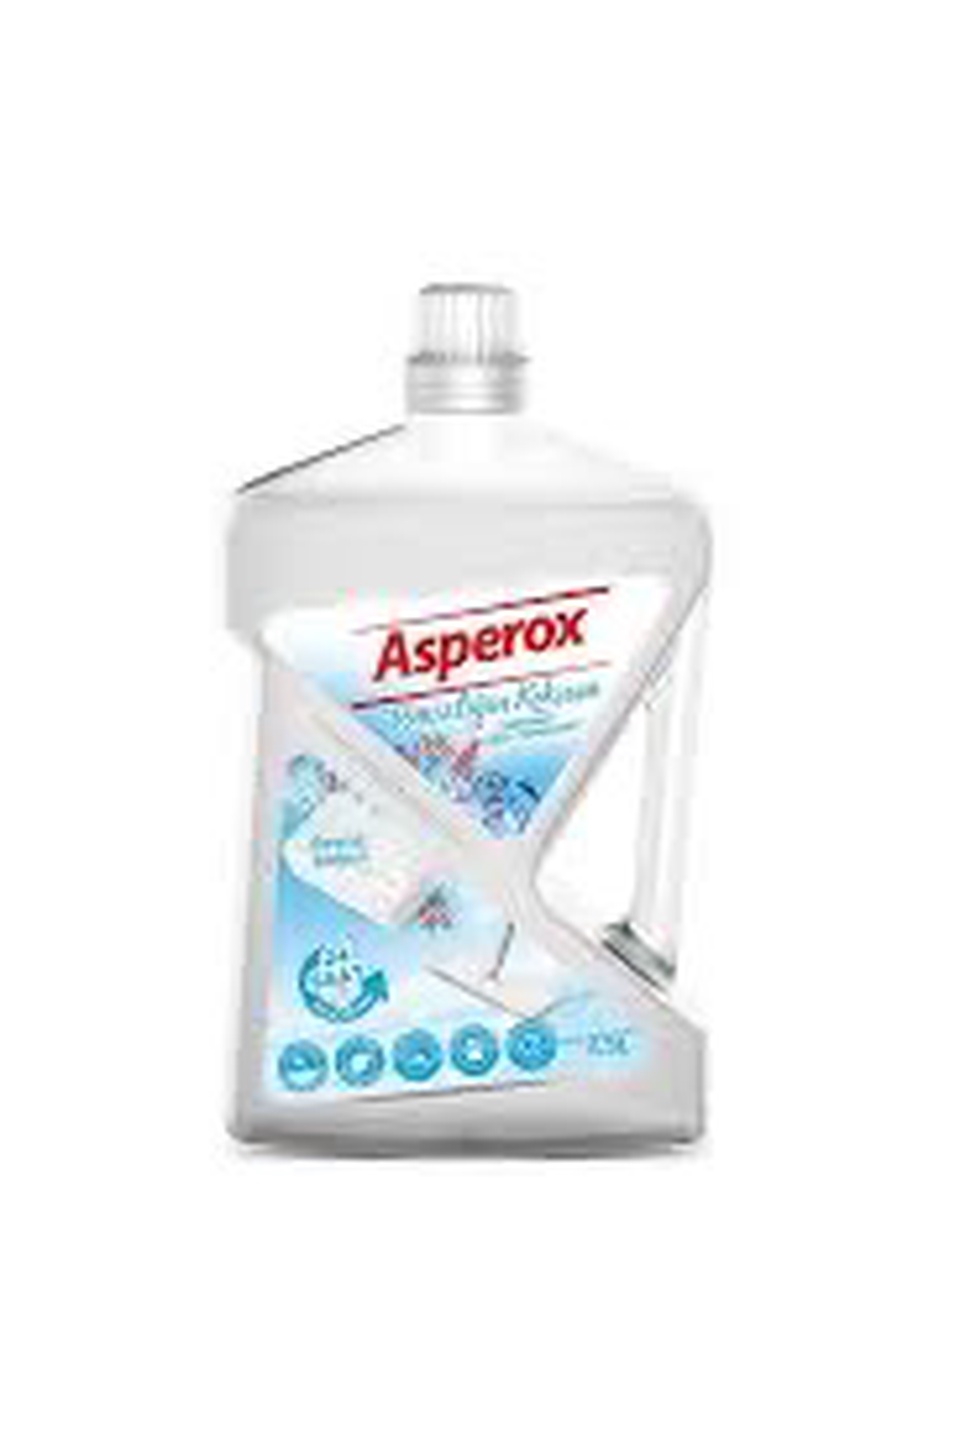 Средство для мытья пола Asperox 2,5 л (Без отдушек) - 350 ₽, заказать онлайн.